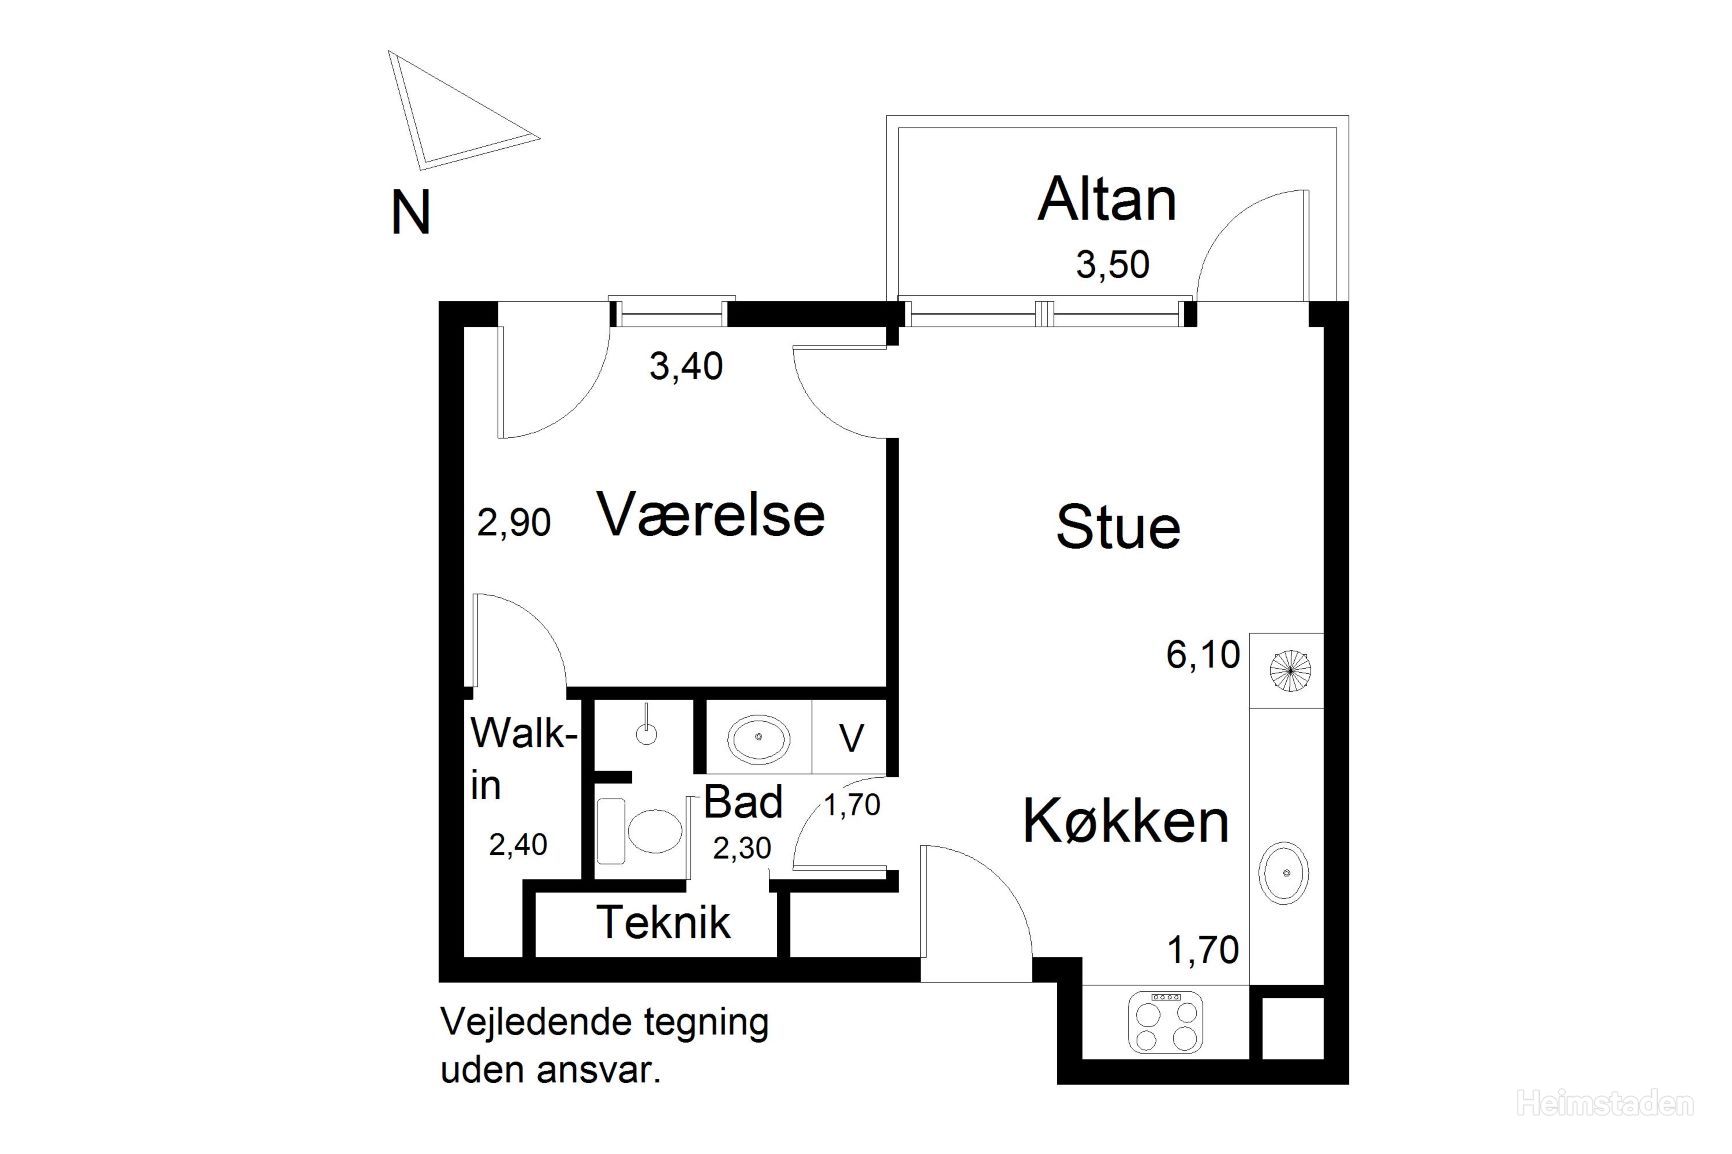 Plantegning for Arresøvej 40, 2. tv., 8240 Risskov, Århus